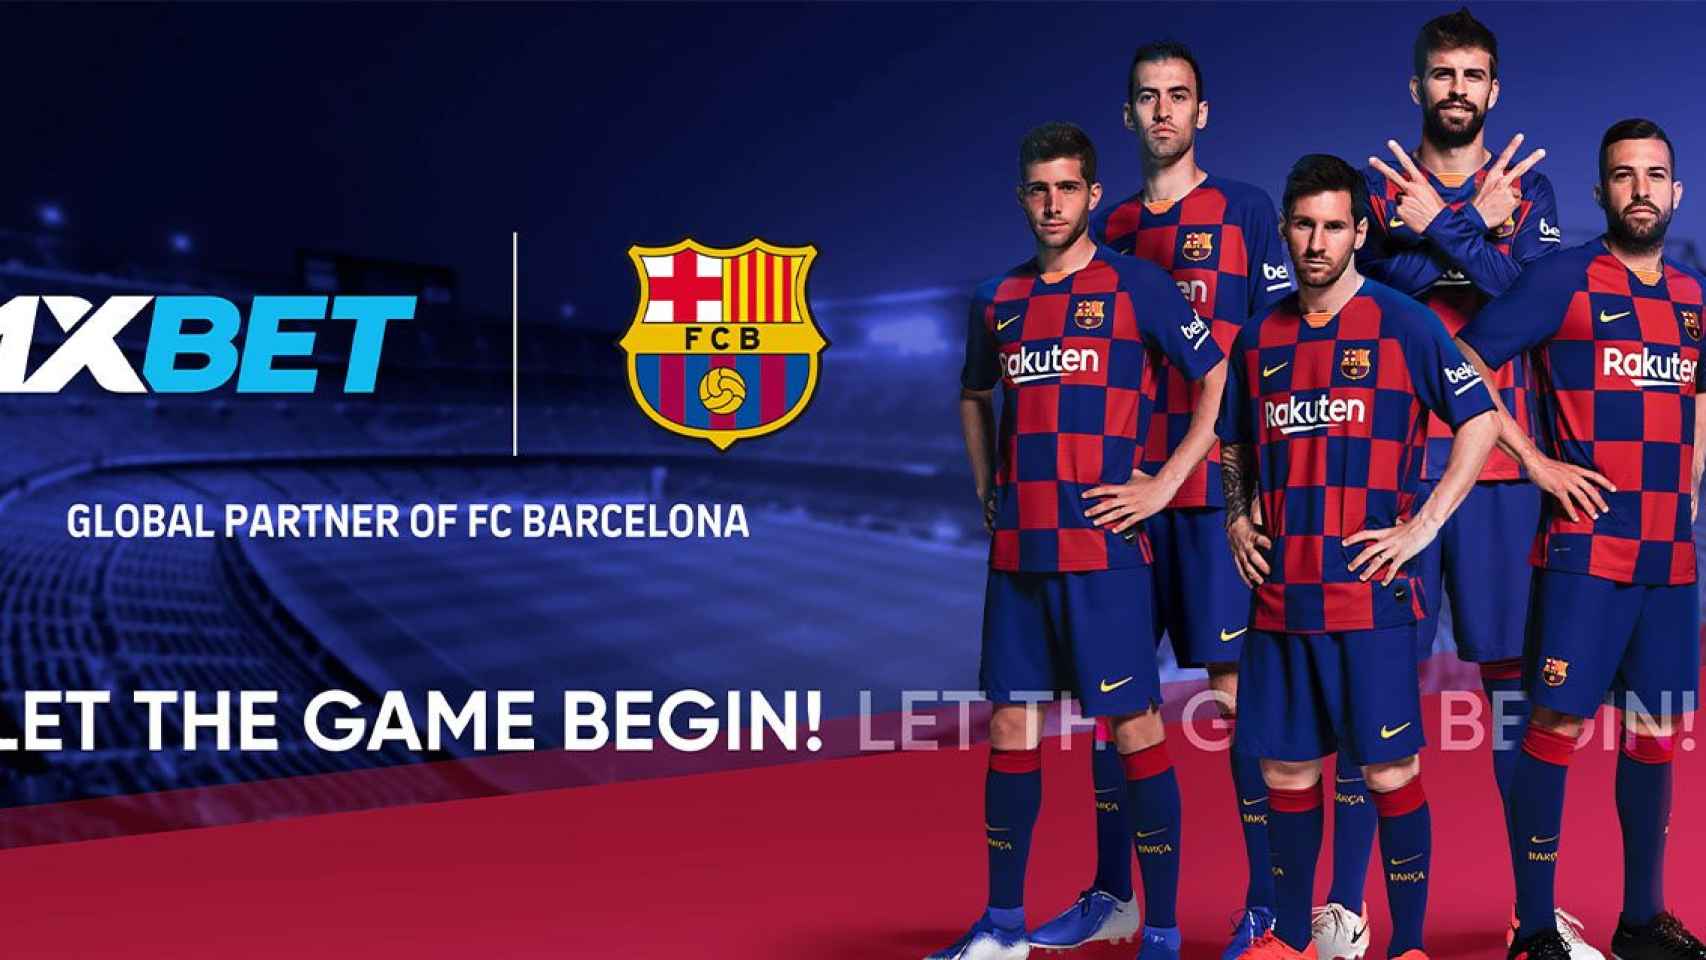 1xBET, el polémico sponsor ruso que se mantiene como patrocinador del Barça